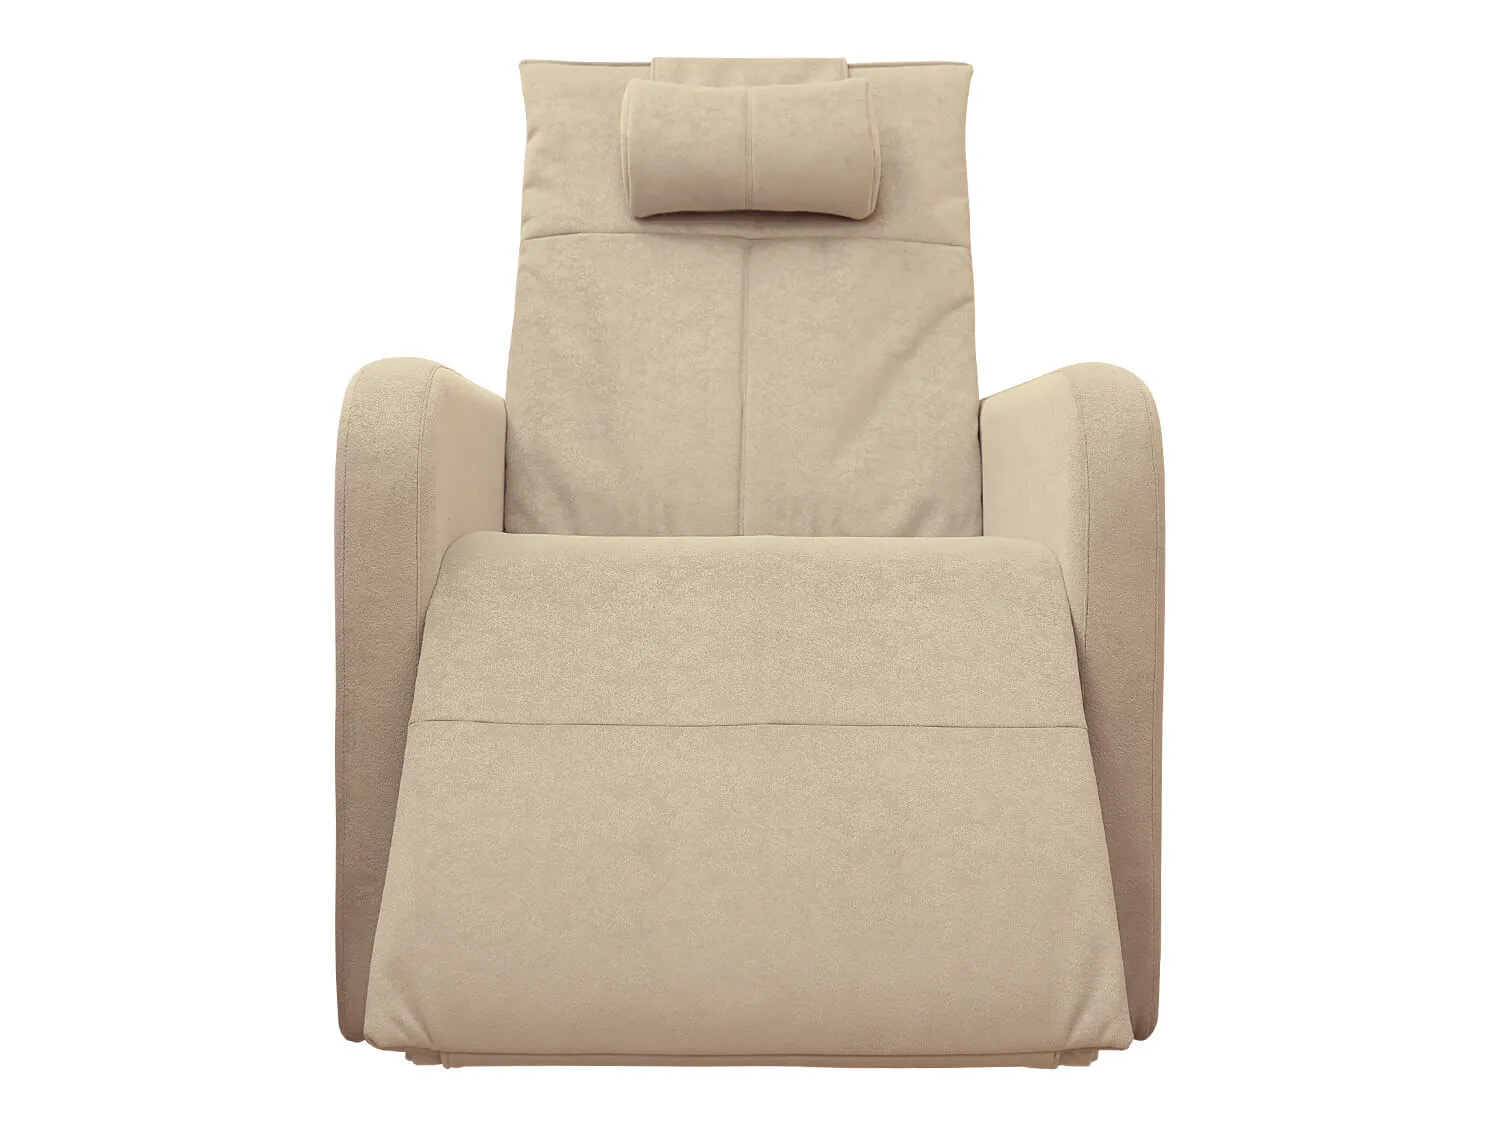 Кресло реклайнер с подъемом FUJIMO LIFT CHAIR F3005 FLWK цвет на заказ - 8 